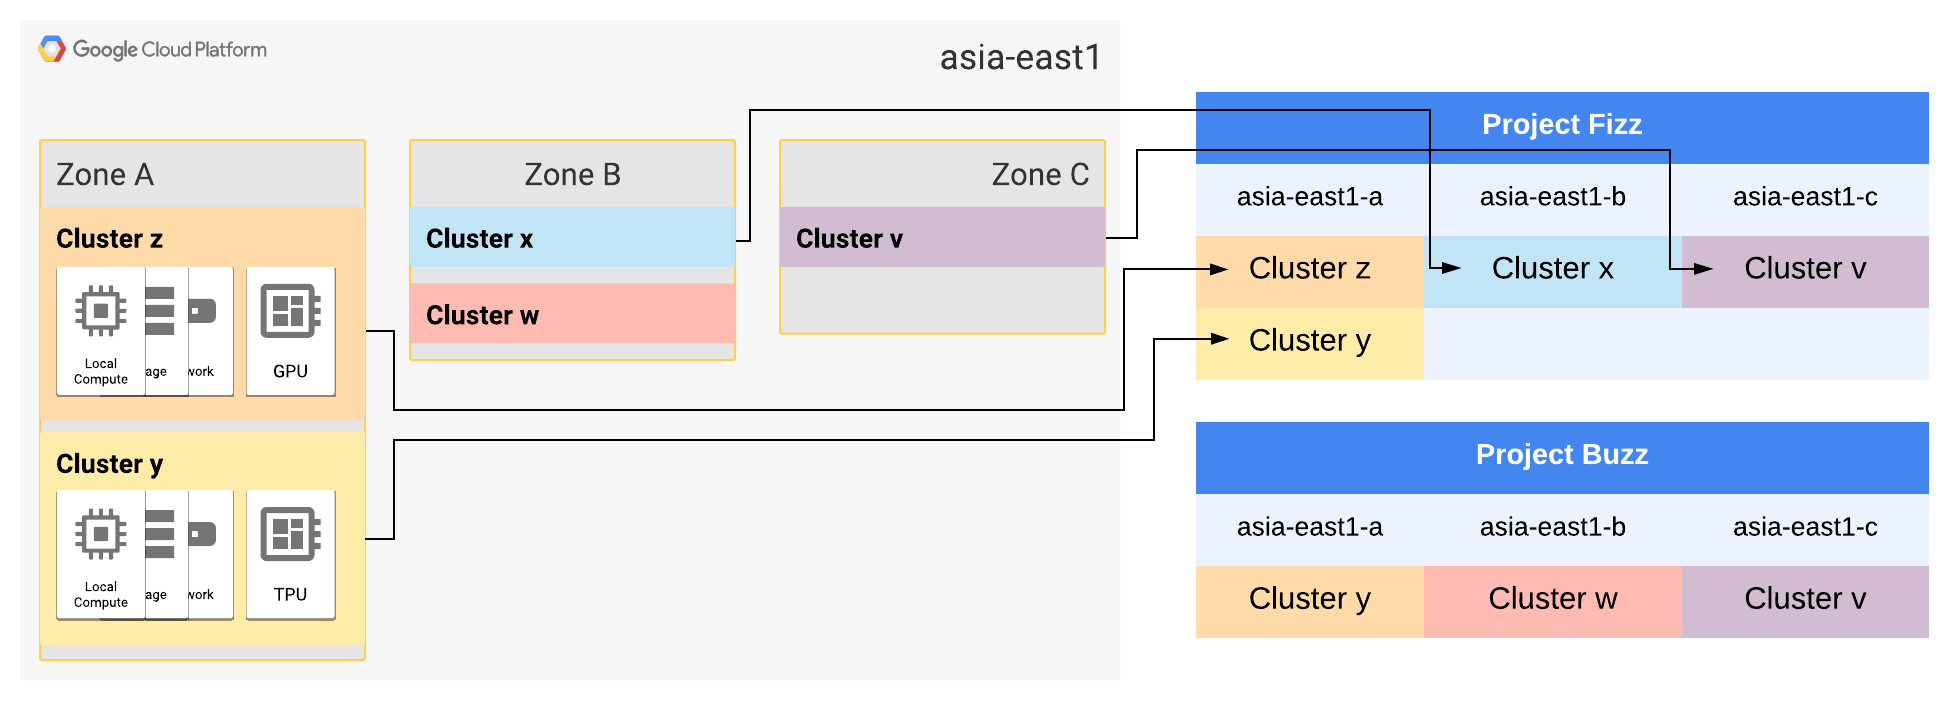 Las zonas asia-east1 A y B se expanden a dos clústeres.